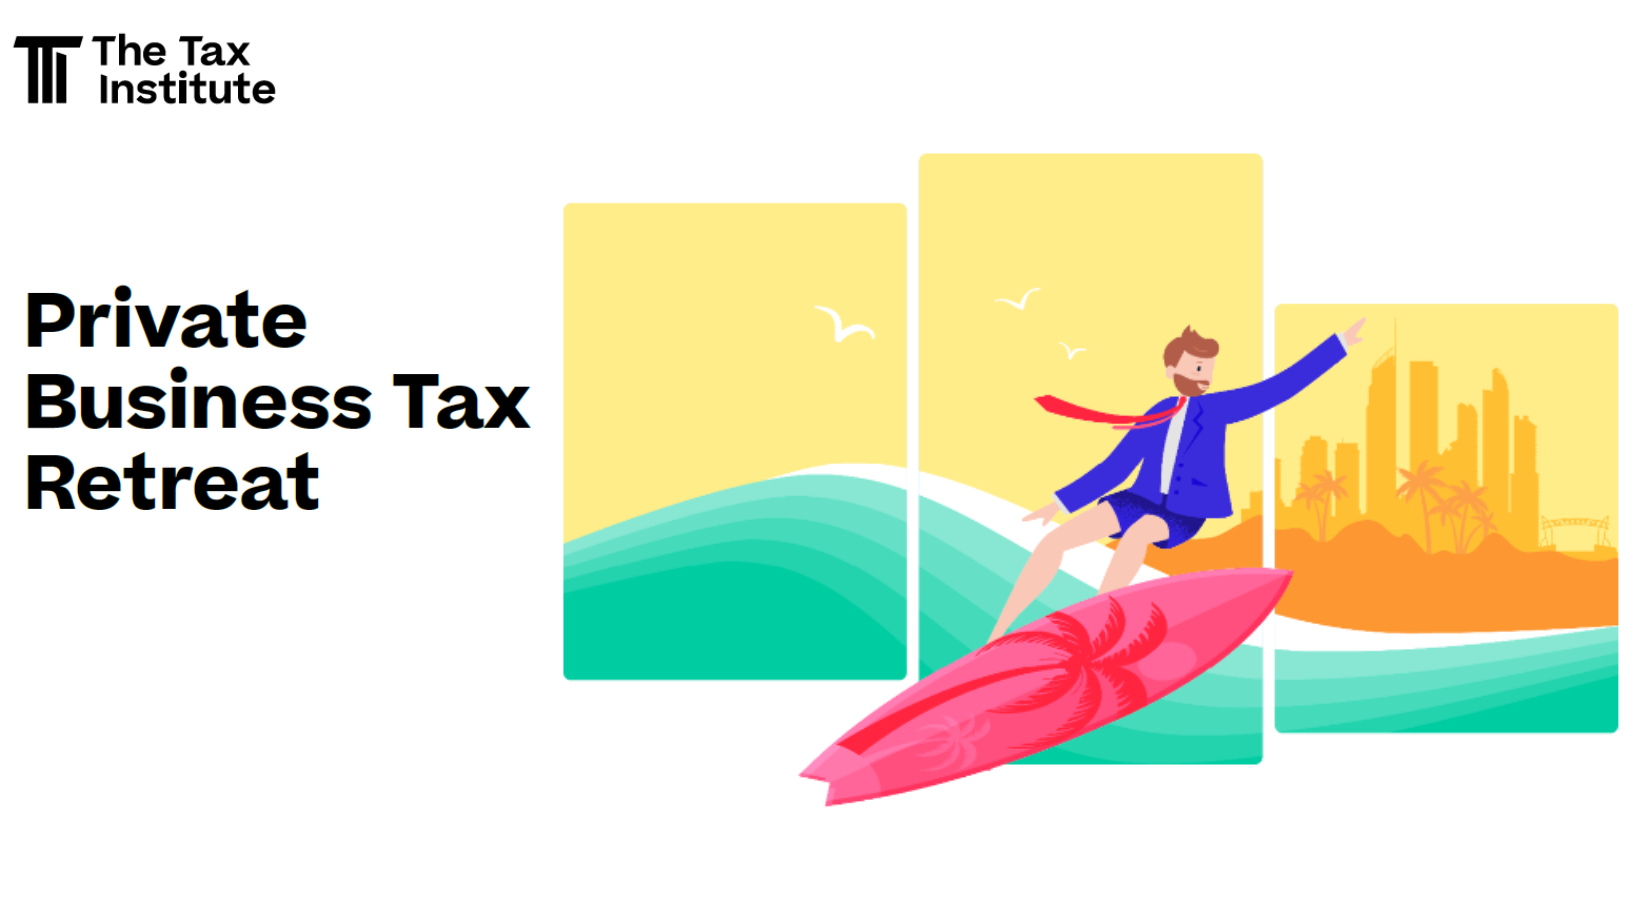 Tax Institute Private Business Tax Retreat